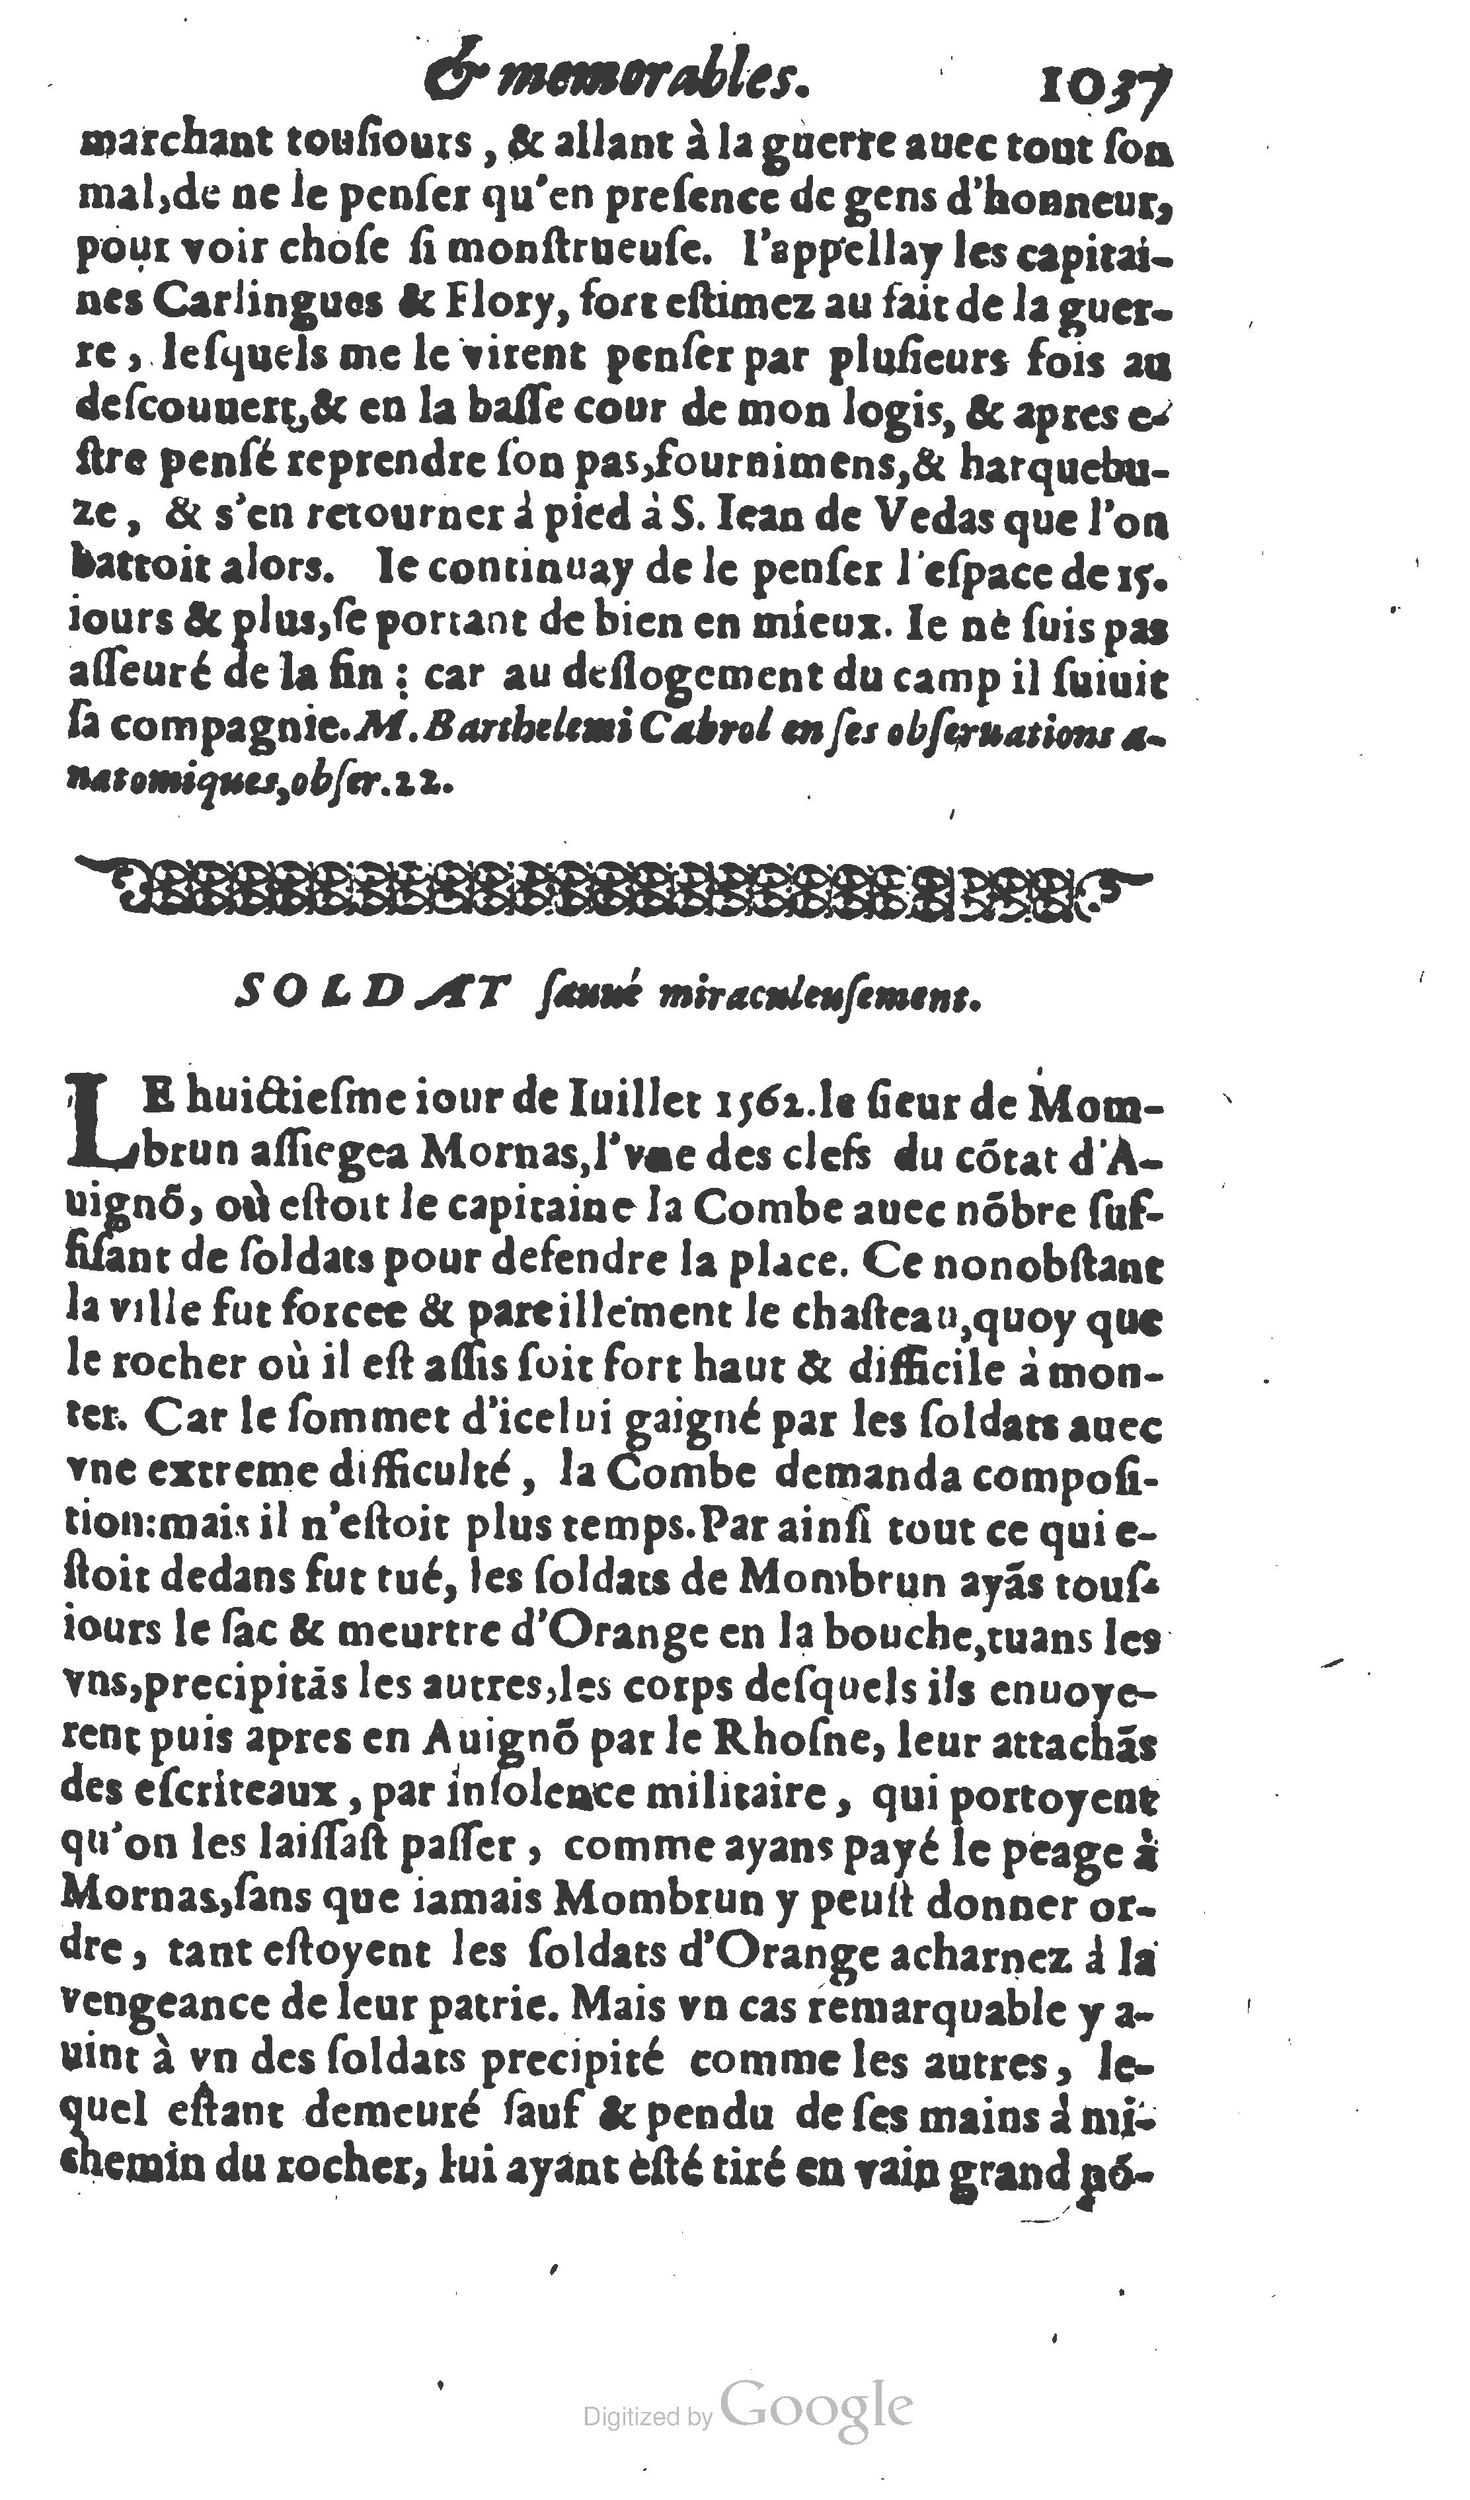 1610 Trésor d’histoires admirables et mémorables de nostre temps Marceau Princeton_Page_1058.jpg